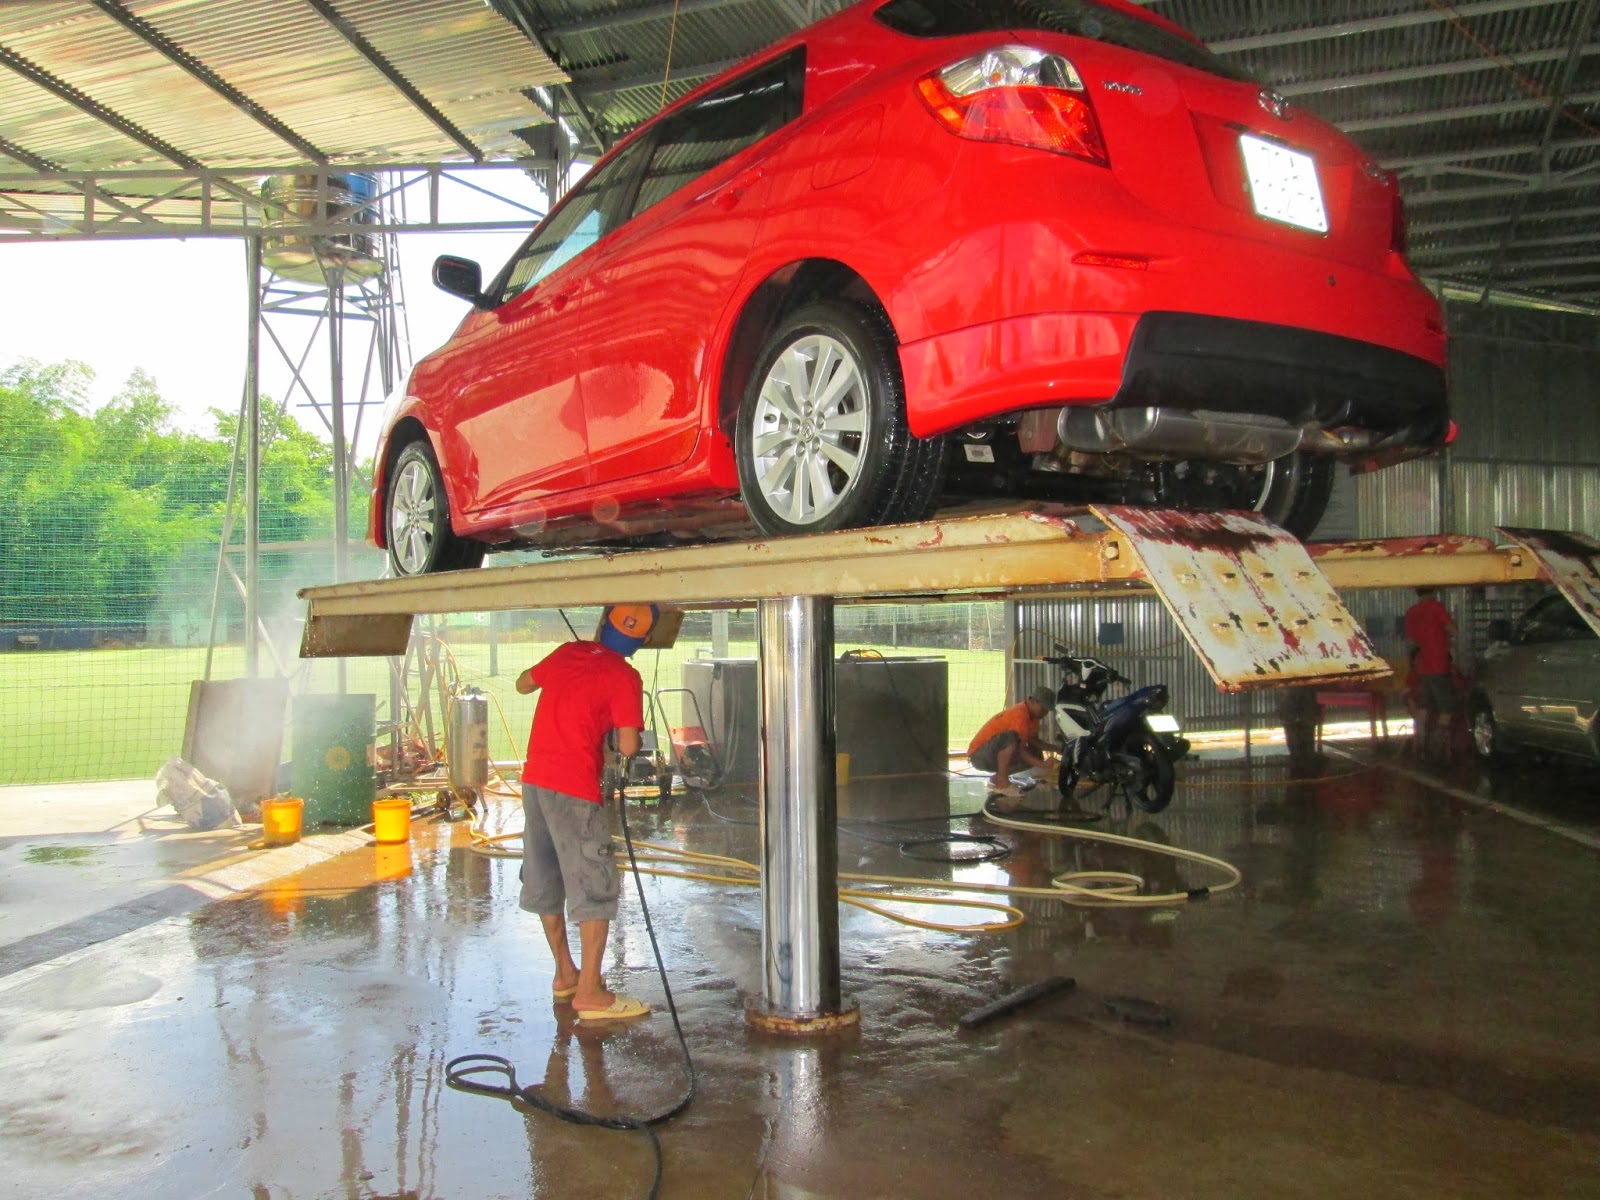 quy trình lắp đặt cầu nâng rửa xe ô tô, hướng dẫn lắp đặt cầu nâng 1 trụ rửa xe